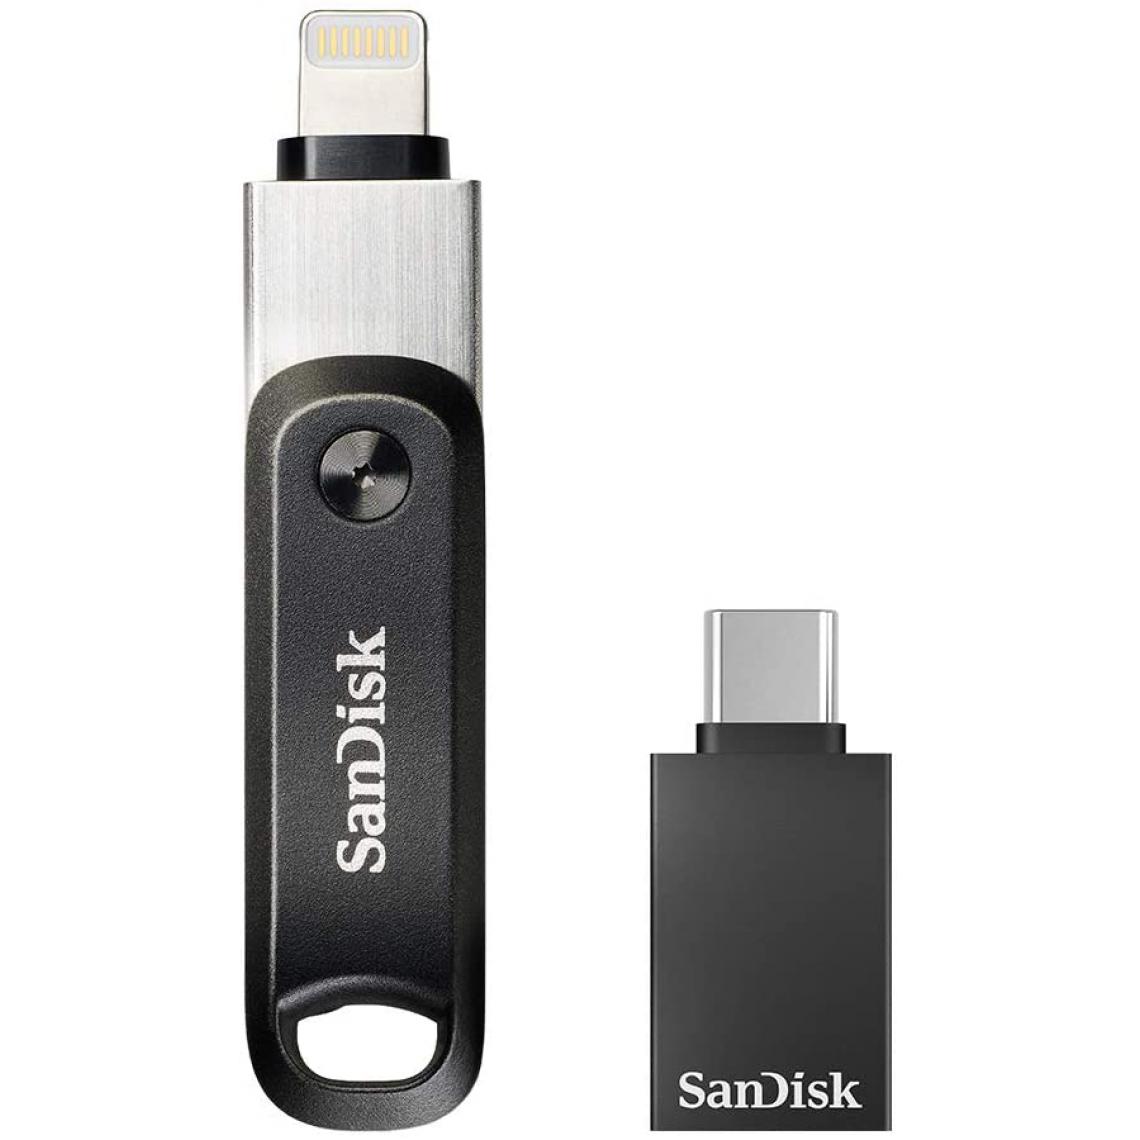 Mgm - Clé Sandisk 256 Go iXpand Go avec adaptateur USB-A vers USB-C - Lecteur carte mémoire